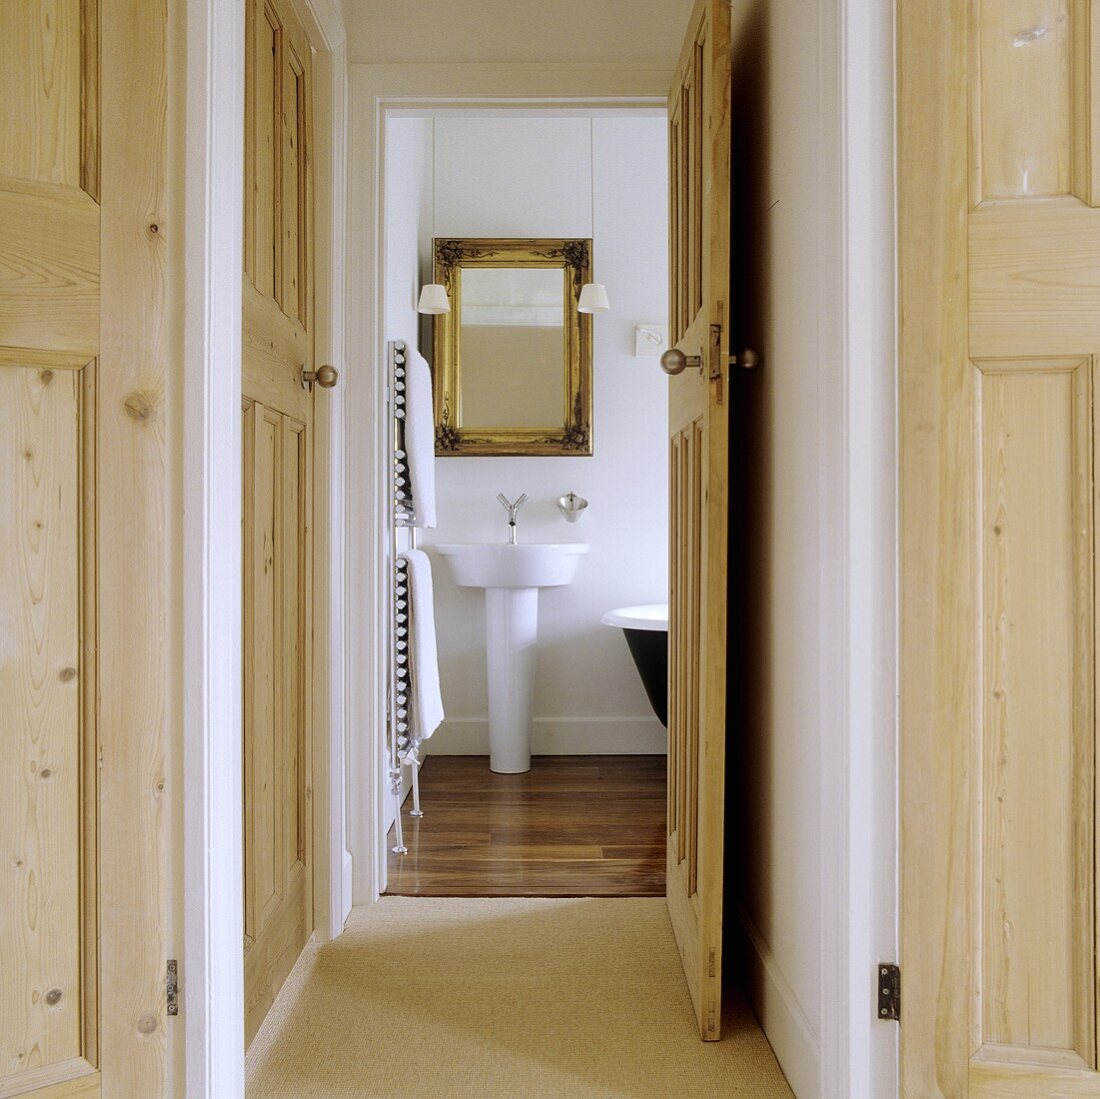 Wohnungsflur mit offenstehender Holzzimmertür mit Blick auf Designerwaschbecken und Spiegel im Goldrahmen